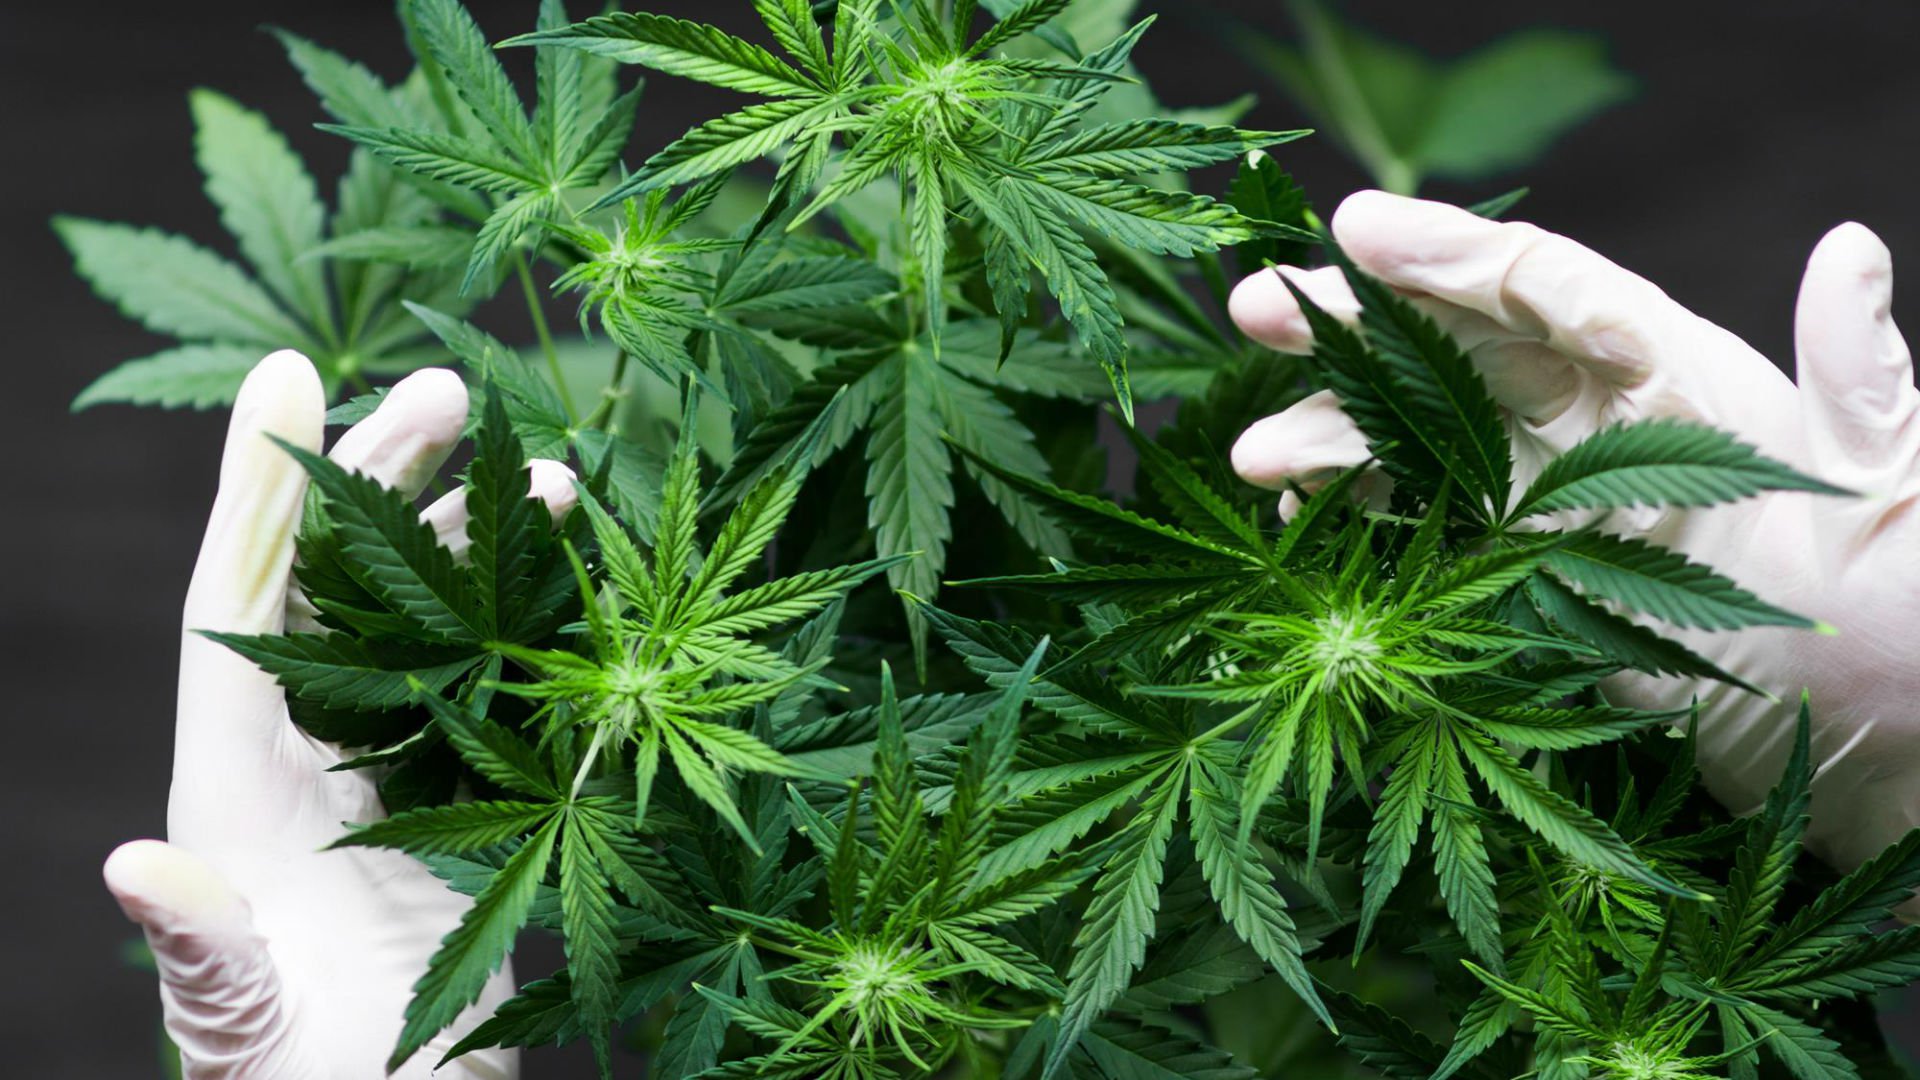 Foto de capa do artigo "Cannabis pode diminuir sintomas em pacientes com câncer"